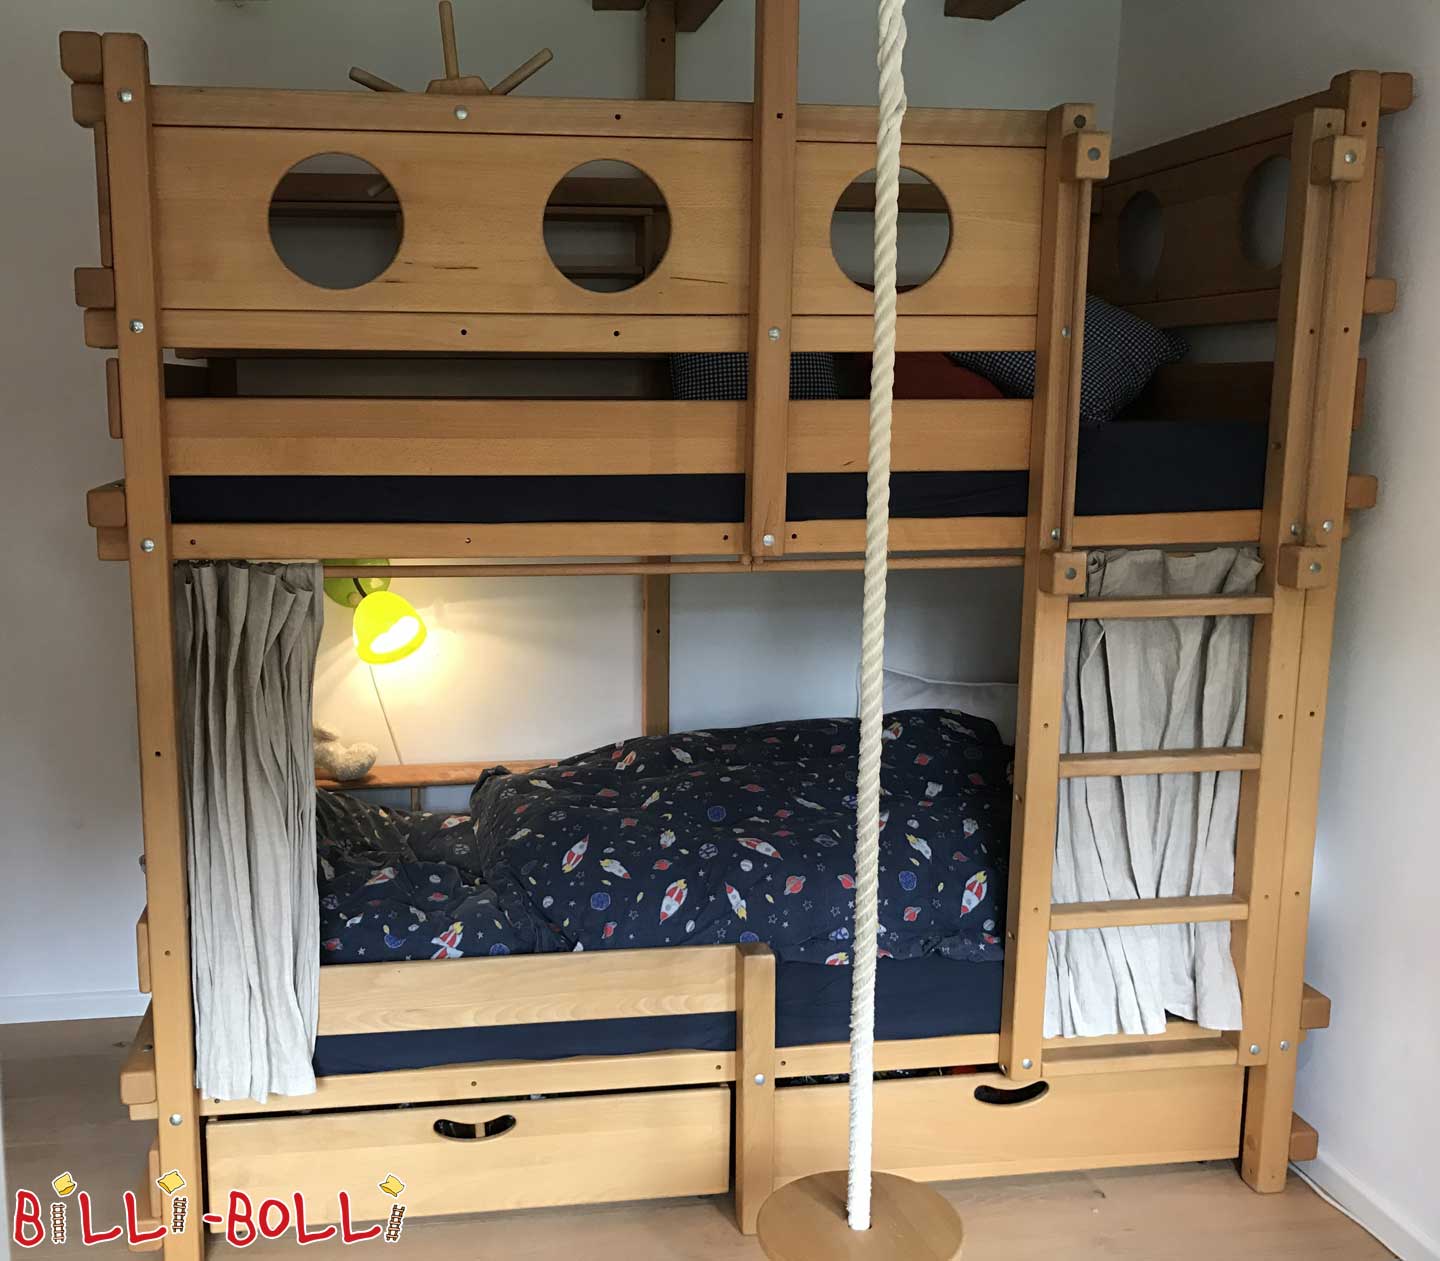 चारपाई बिस्तर, 90 x 200 सेमी, तेल से सना हुआ लच्छेदार बीच (कोटि: मचान बिस्तर का इस्तेमाल किया)